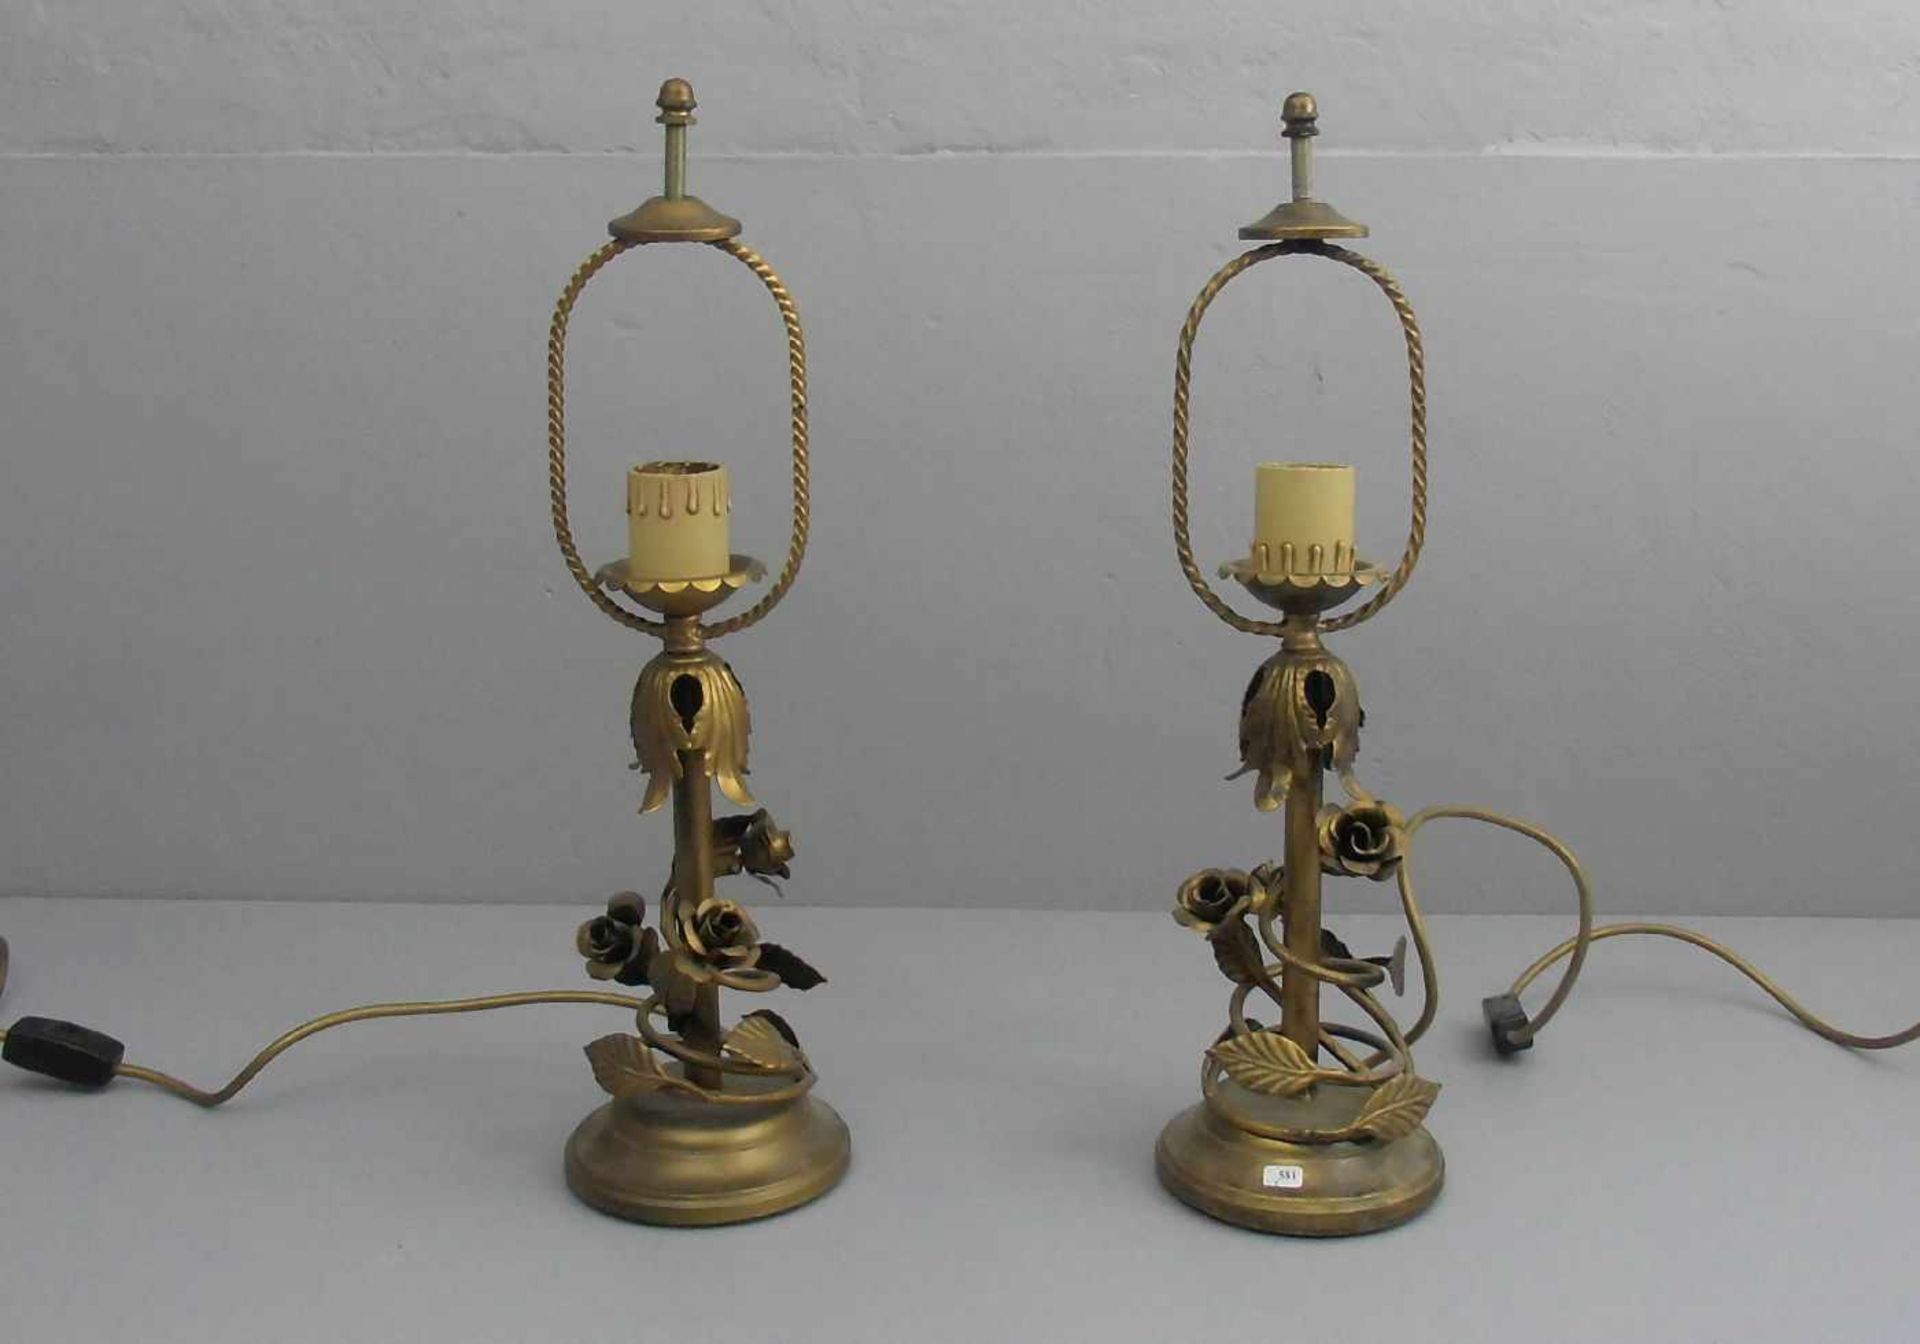 PAAR LAMPEN / TISCHLAMPEN, bronziertes Metall, einflammig elektrifiziert. Profilierter Rundstand,